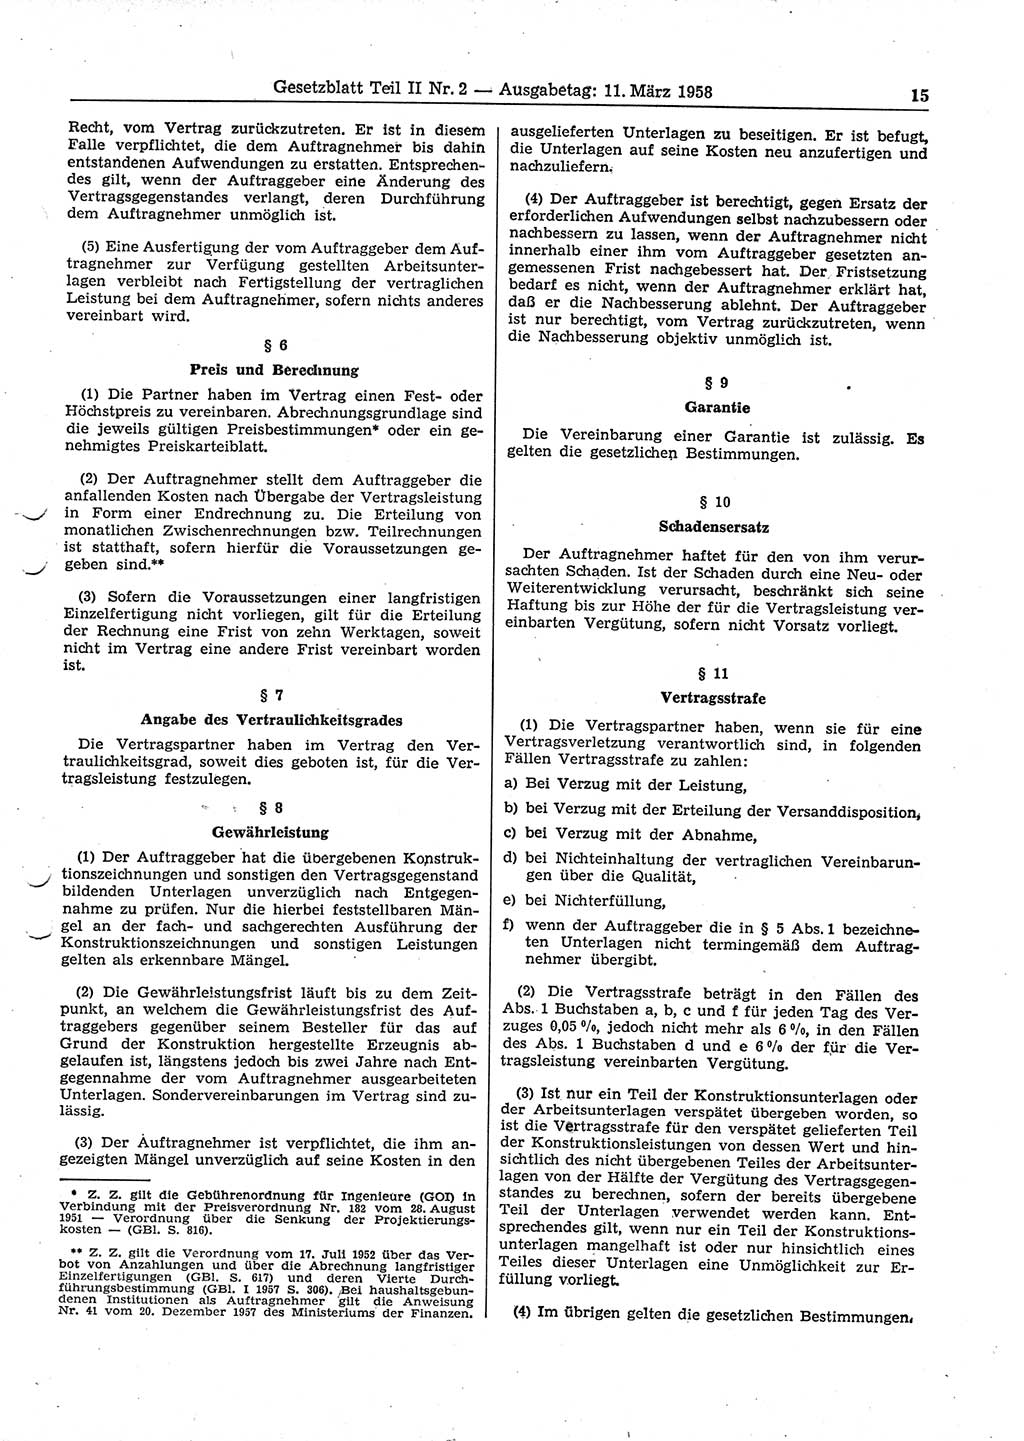 Gesetzblatt (GBl.) der Deutschen Demokratischen Republik (DDR) Teil ⅠⅠ 1958, Seite 15 (GBl. DDR ⅠⅠ 1958, S. 15)